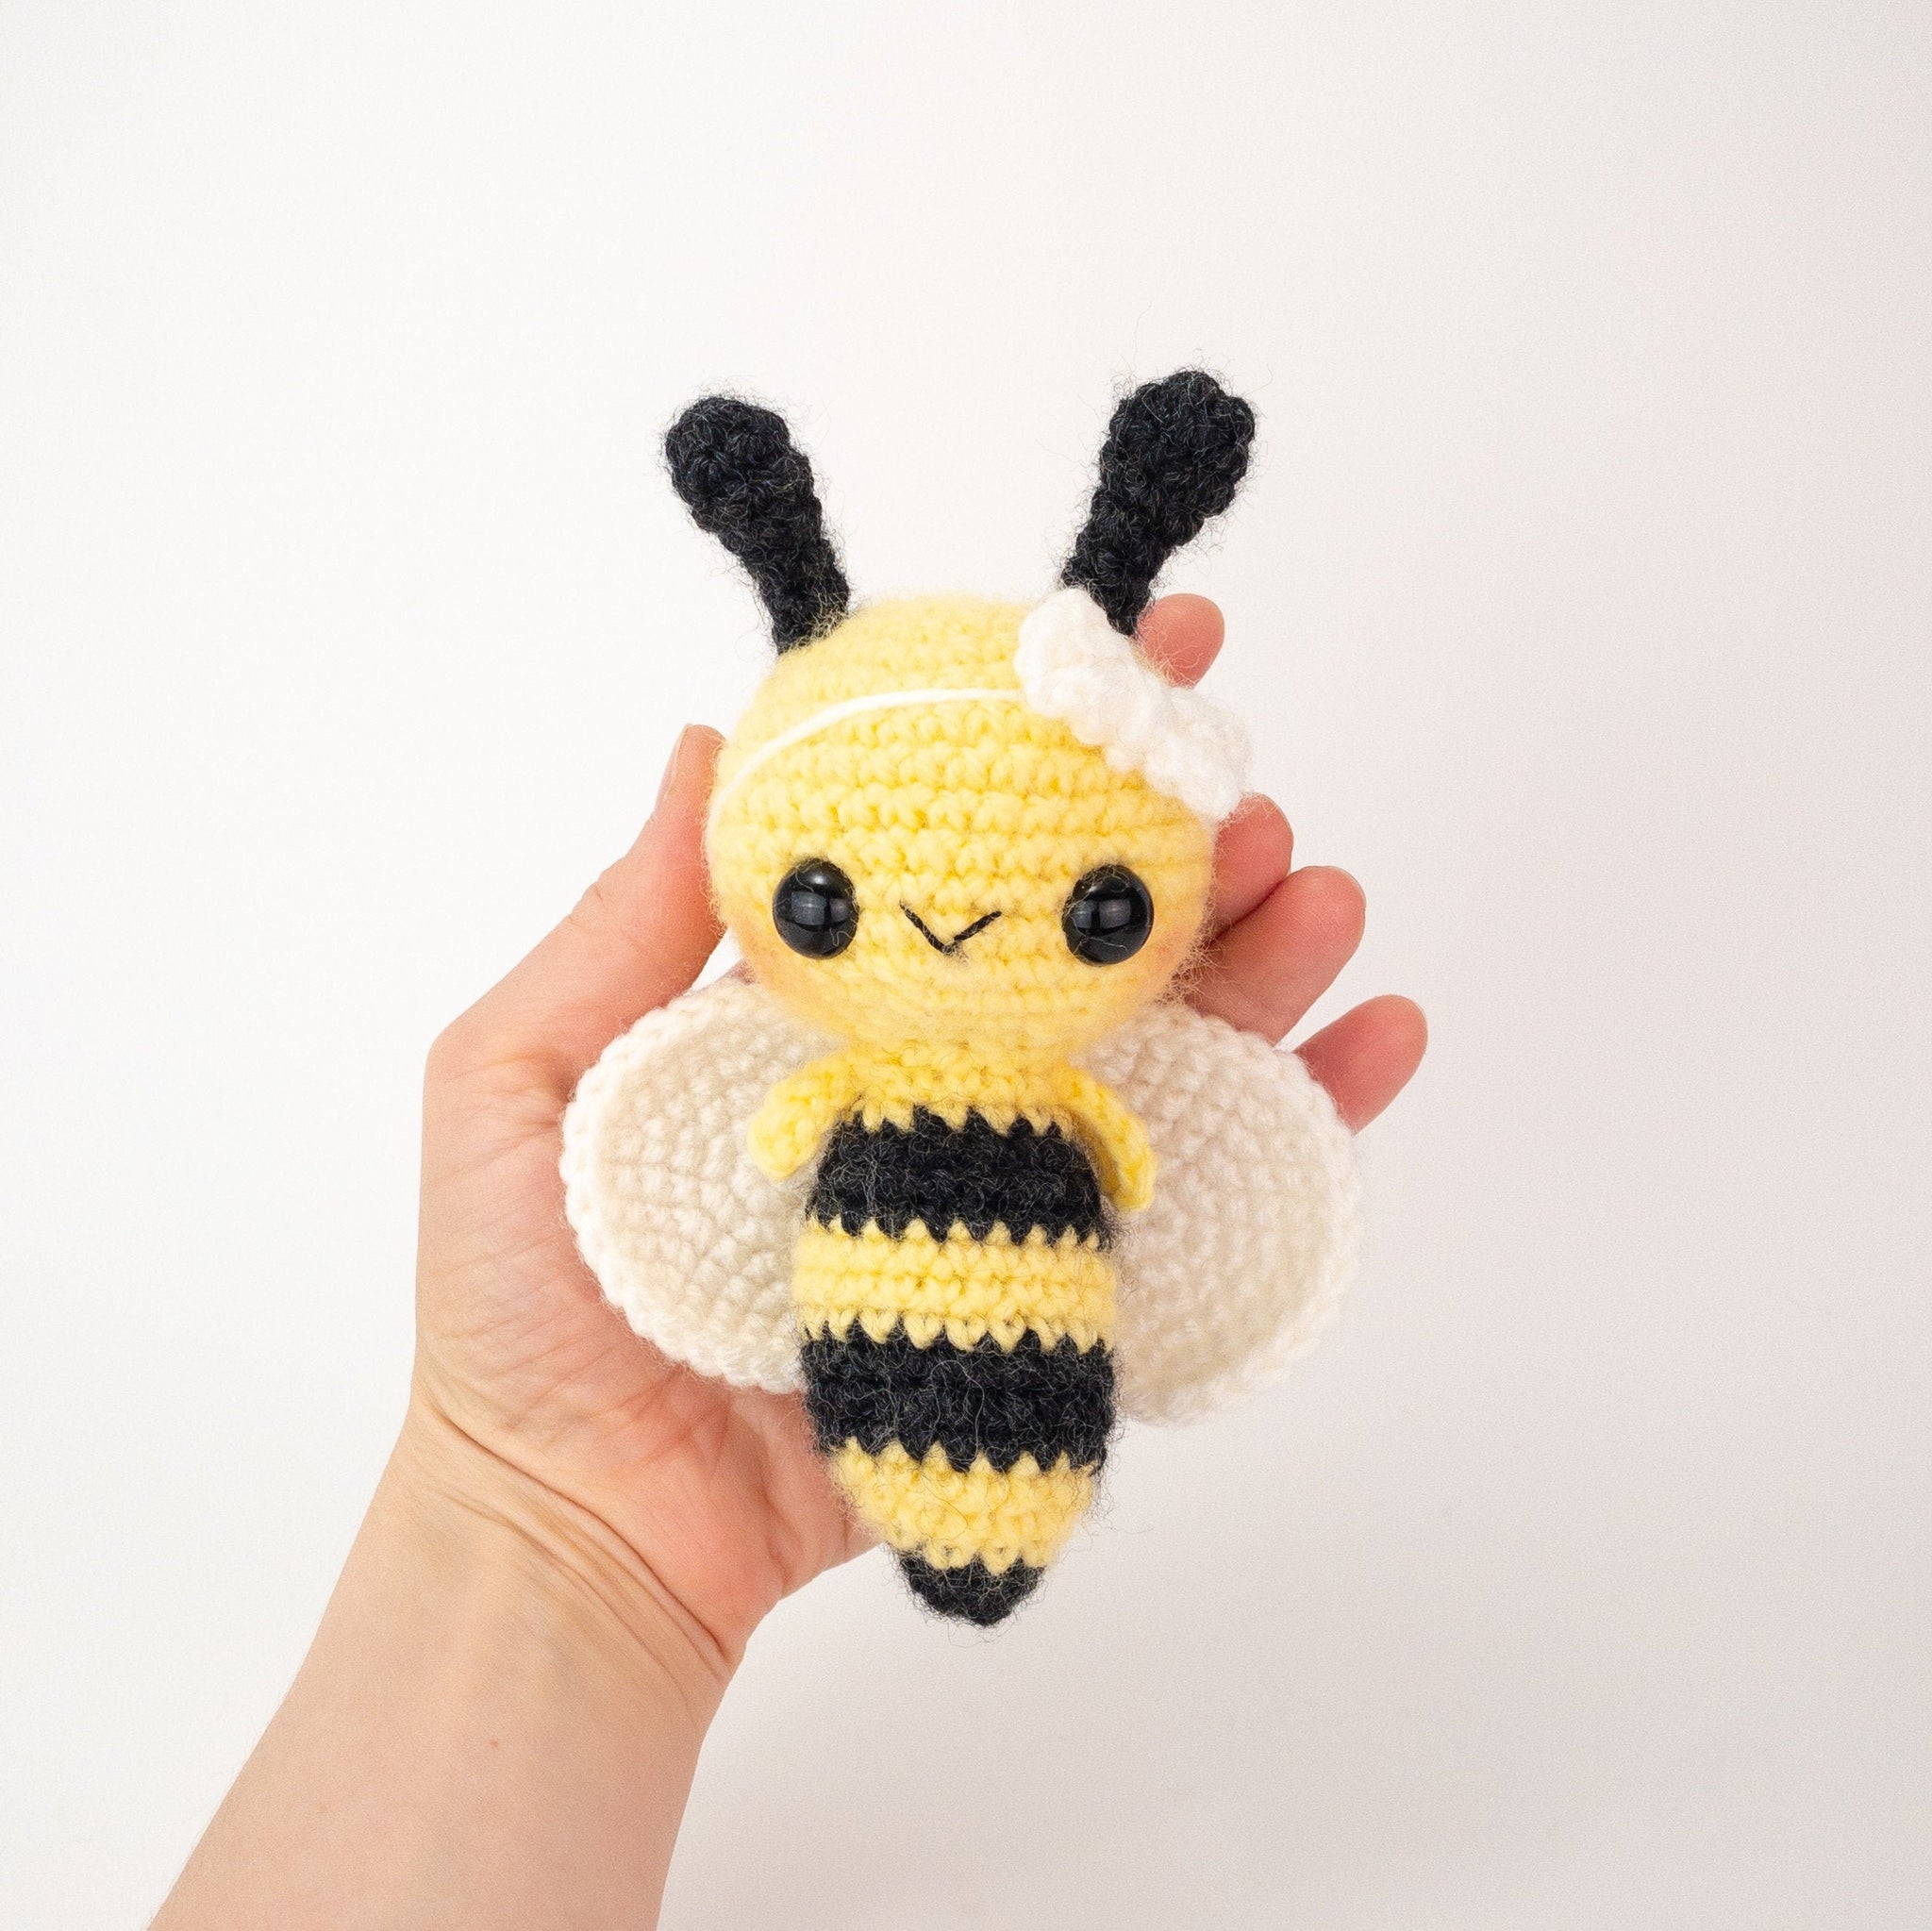 Phoebee the Bee – Theresas Crochet Shop